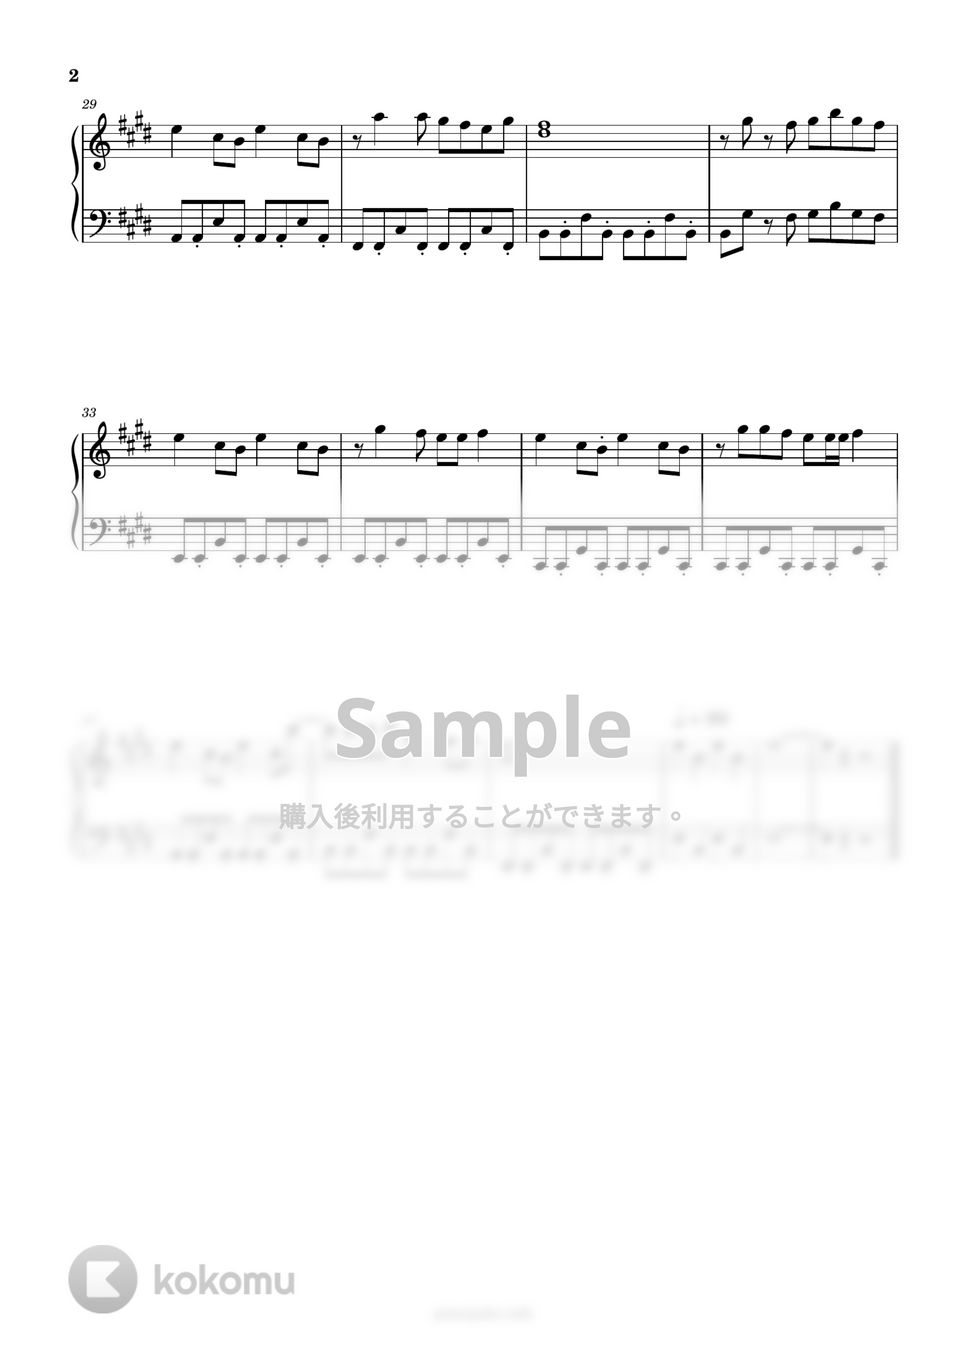 ちびまる子ちゃん - おどるポンポコリン (簡単楽譜) by ピアノ塾